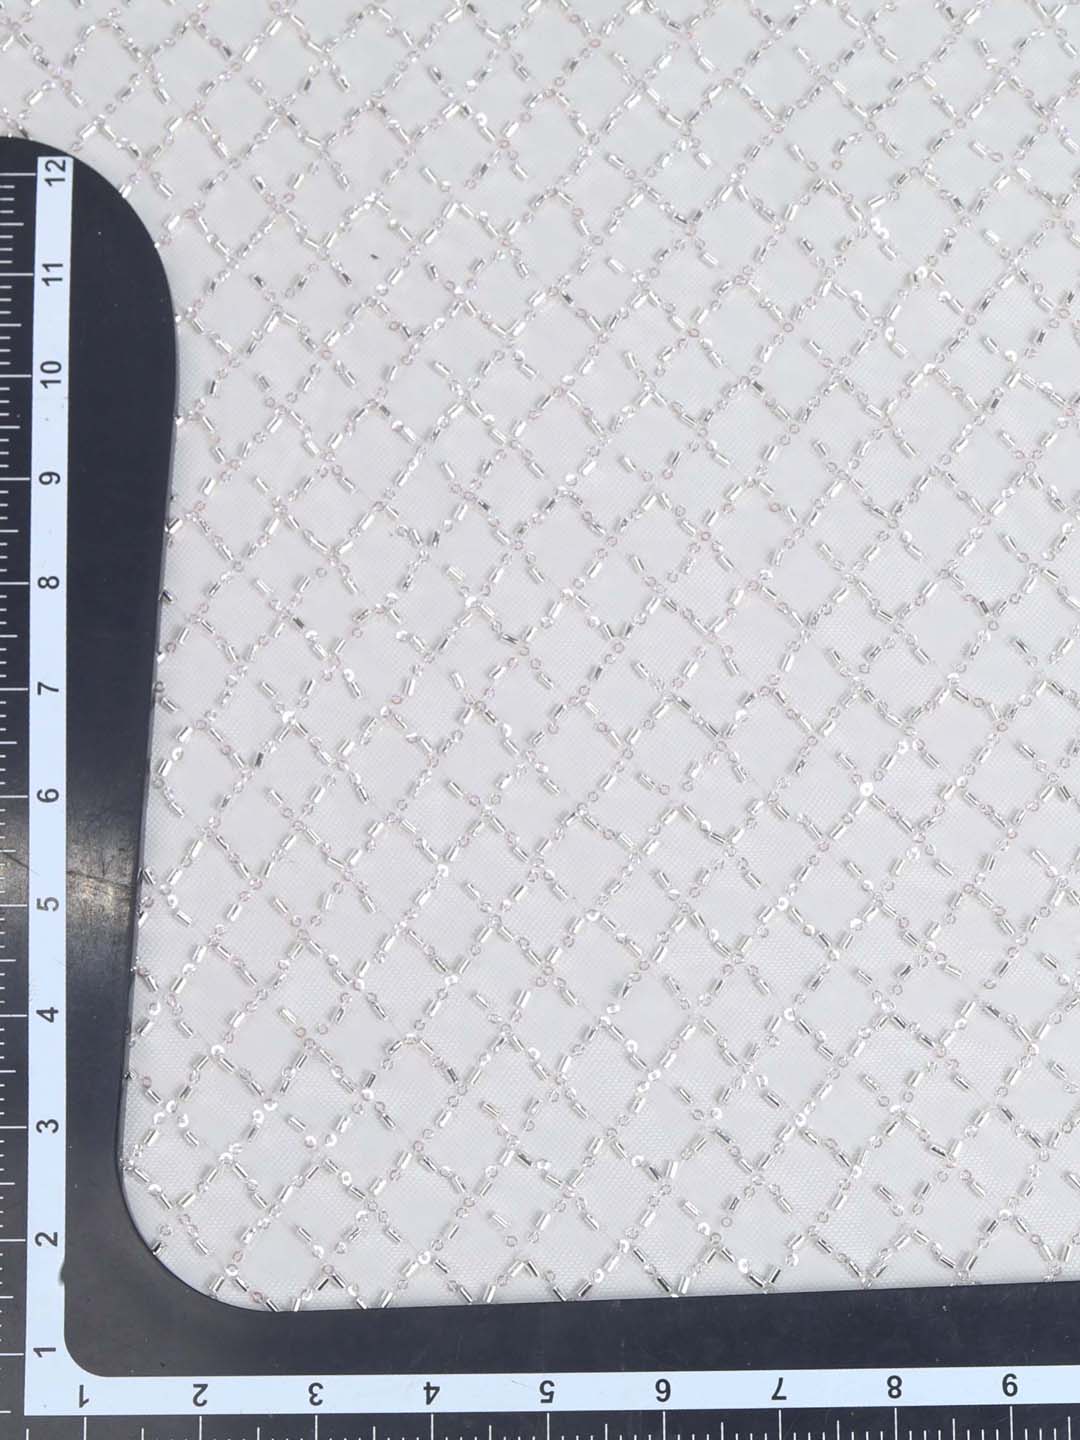 White Checks Embroidered Net